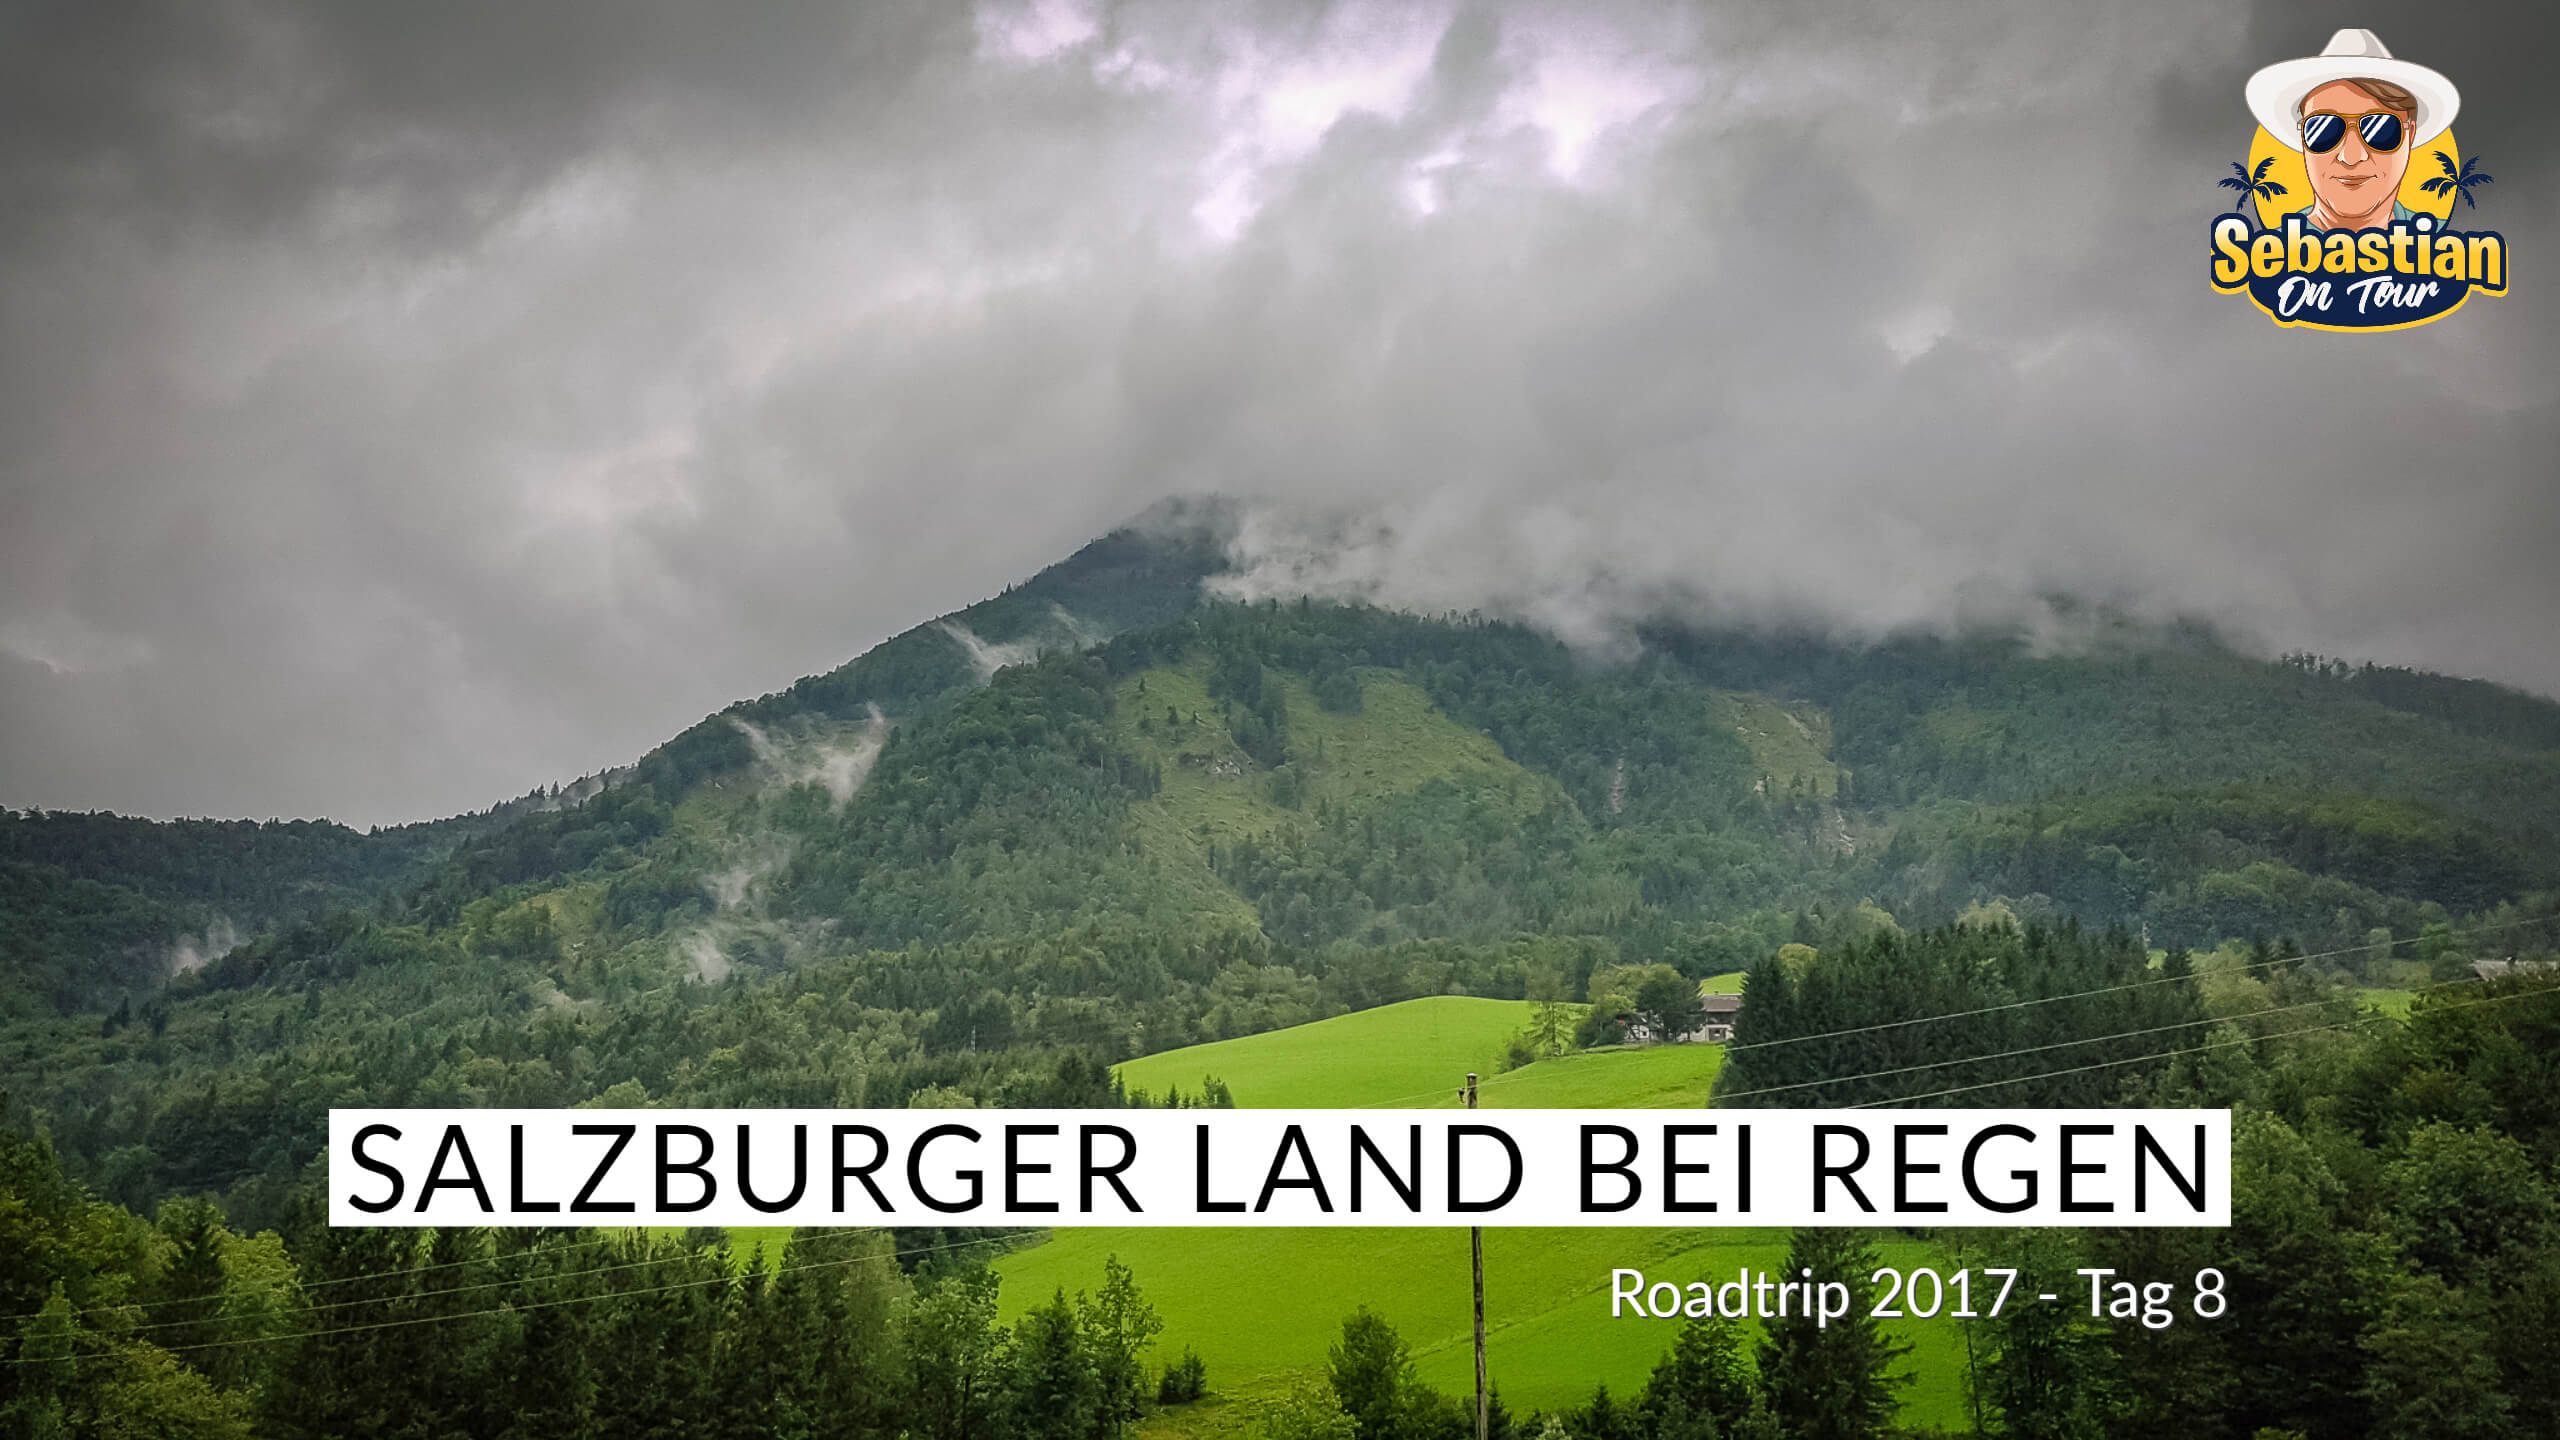 Salzburger Land bei Regen - Cabrio Tour 2017 - Tag 8